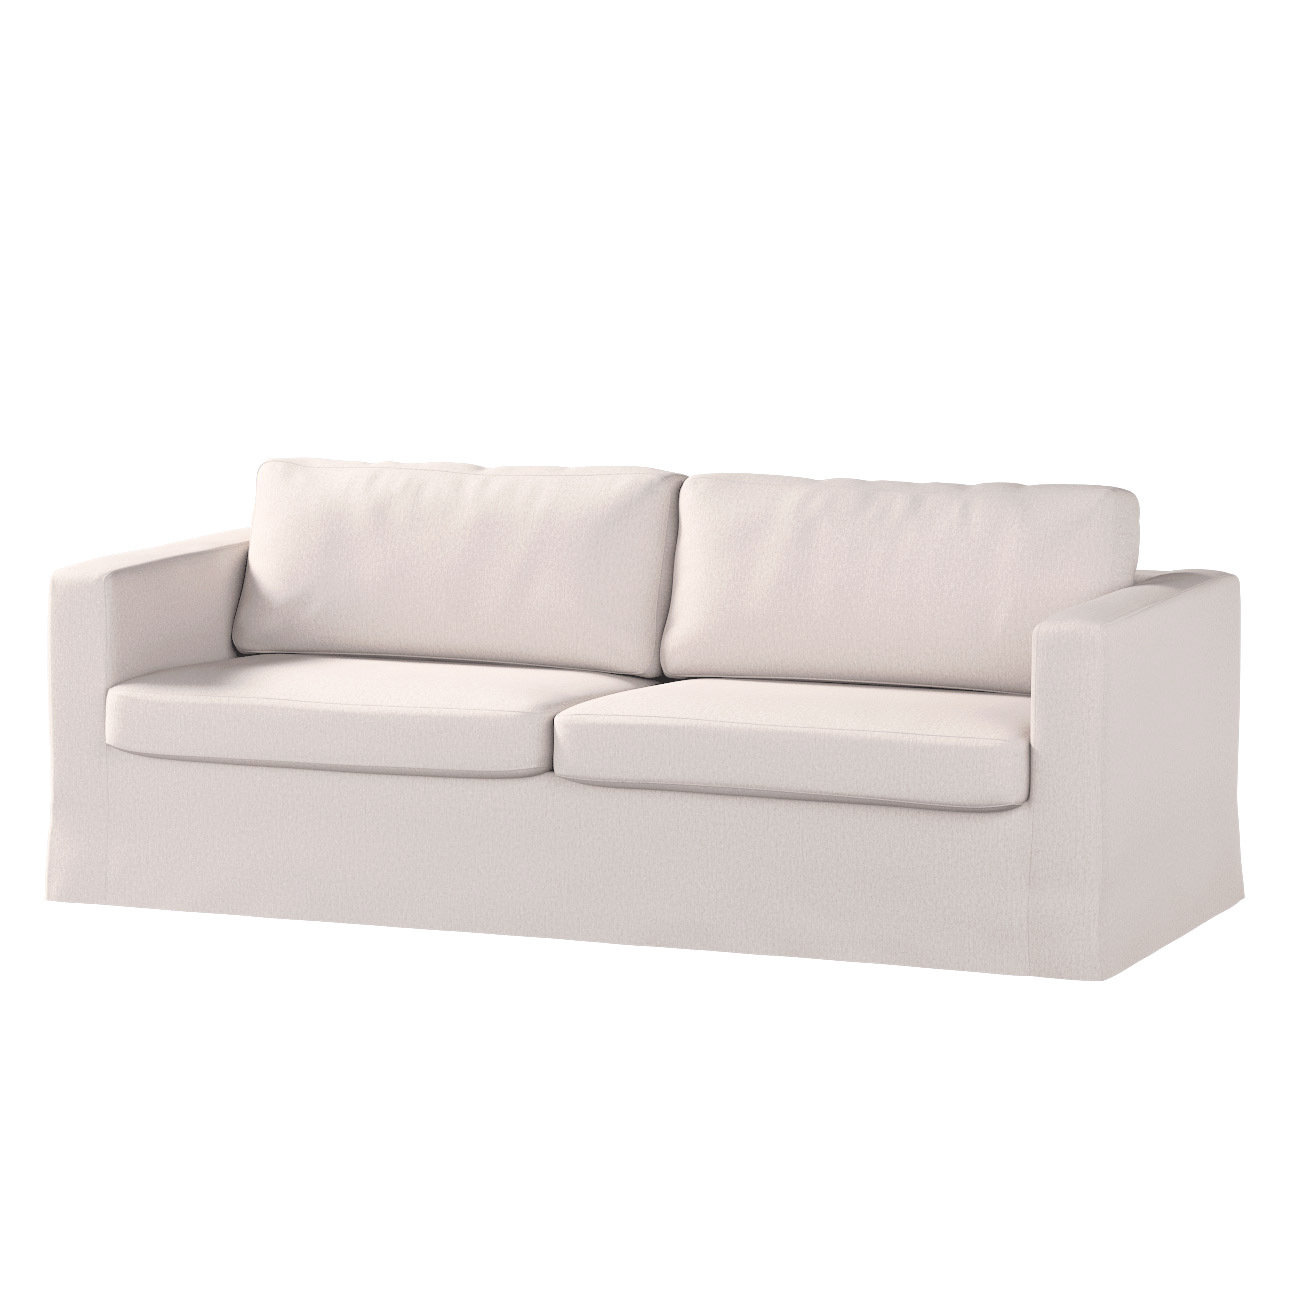 Bezug für Karlstad 3-Sitzer Sofa nicht ausklappbar, lang, hellbeige, Bezug günstig online kaufen